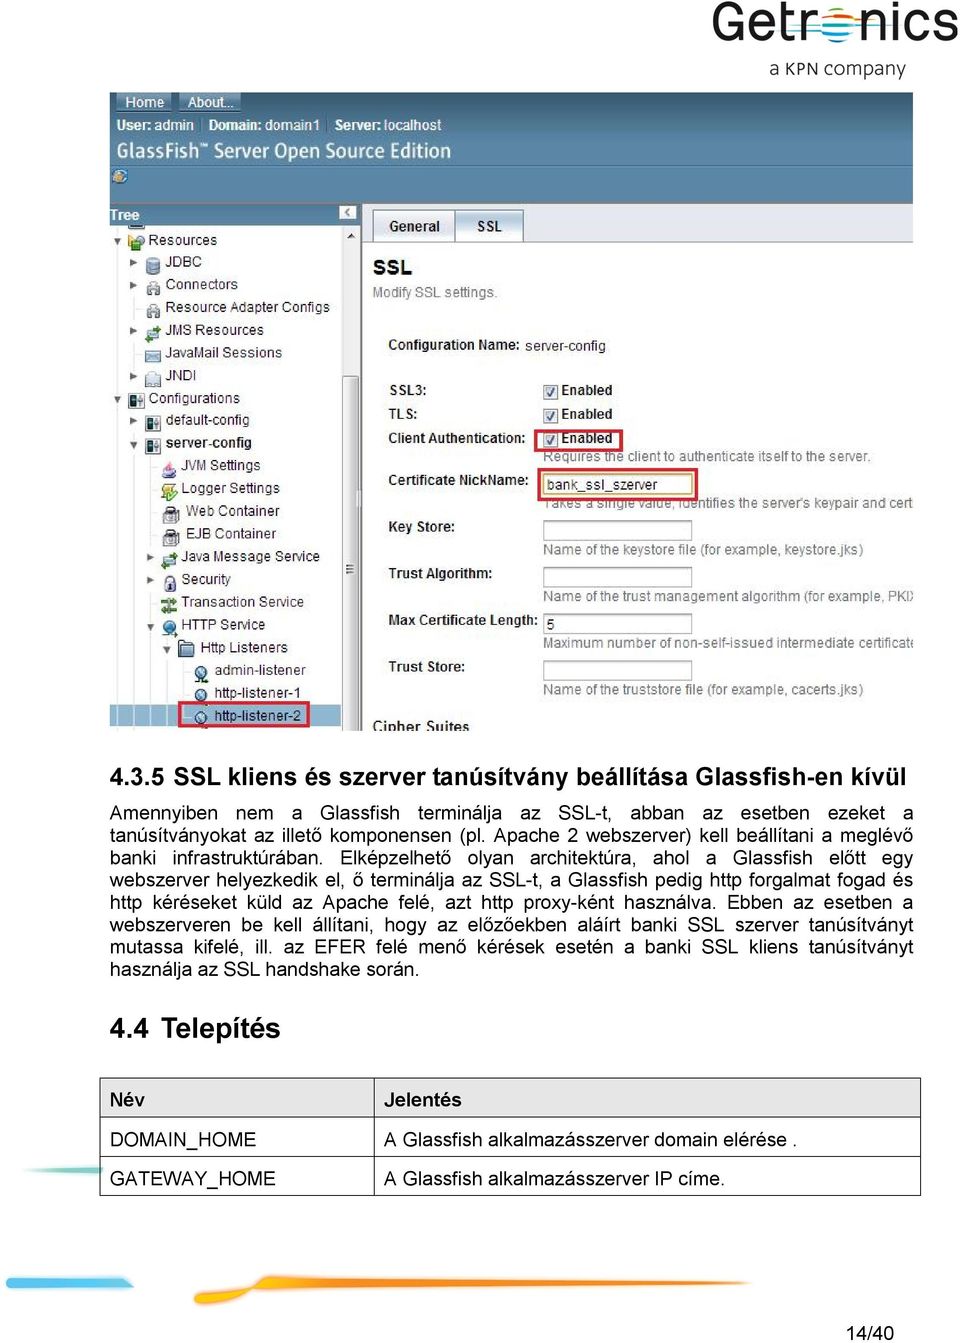 Elképzelhető olyan architektúra, ahol a Glassfish előtt egy webszerver helyezkedik el, ő terminálja az SSL-t, a Glassfish pedig http forgalmat fogad és http kéréseket küld az Apache felé, azt http